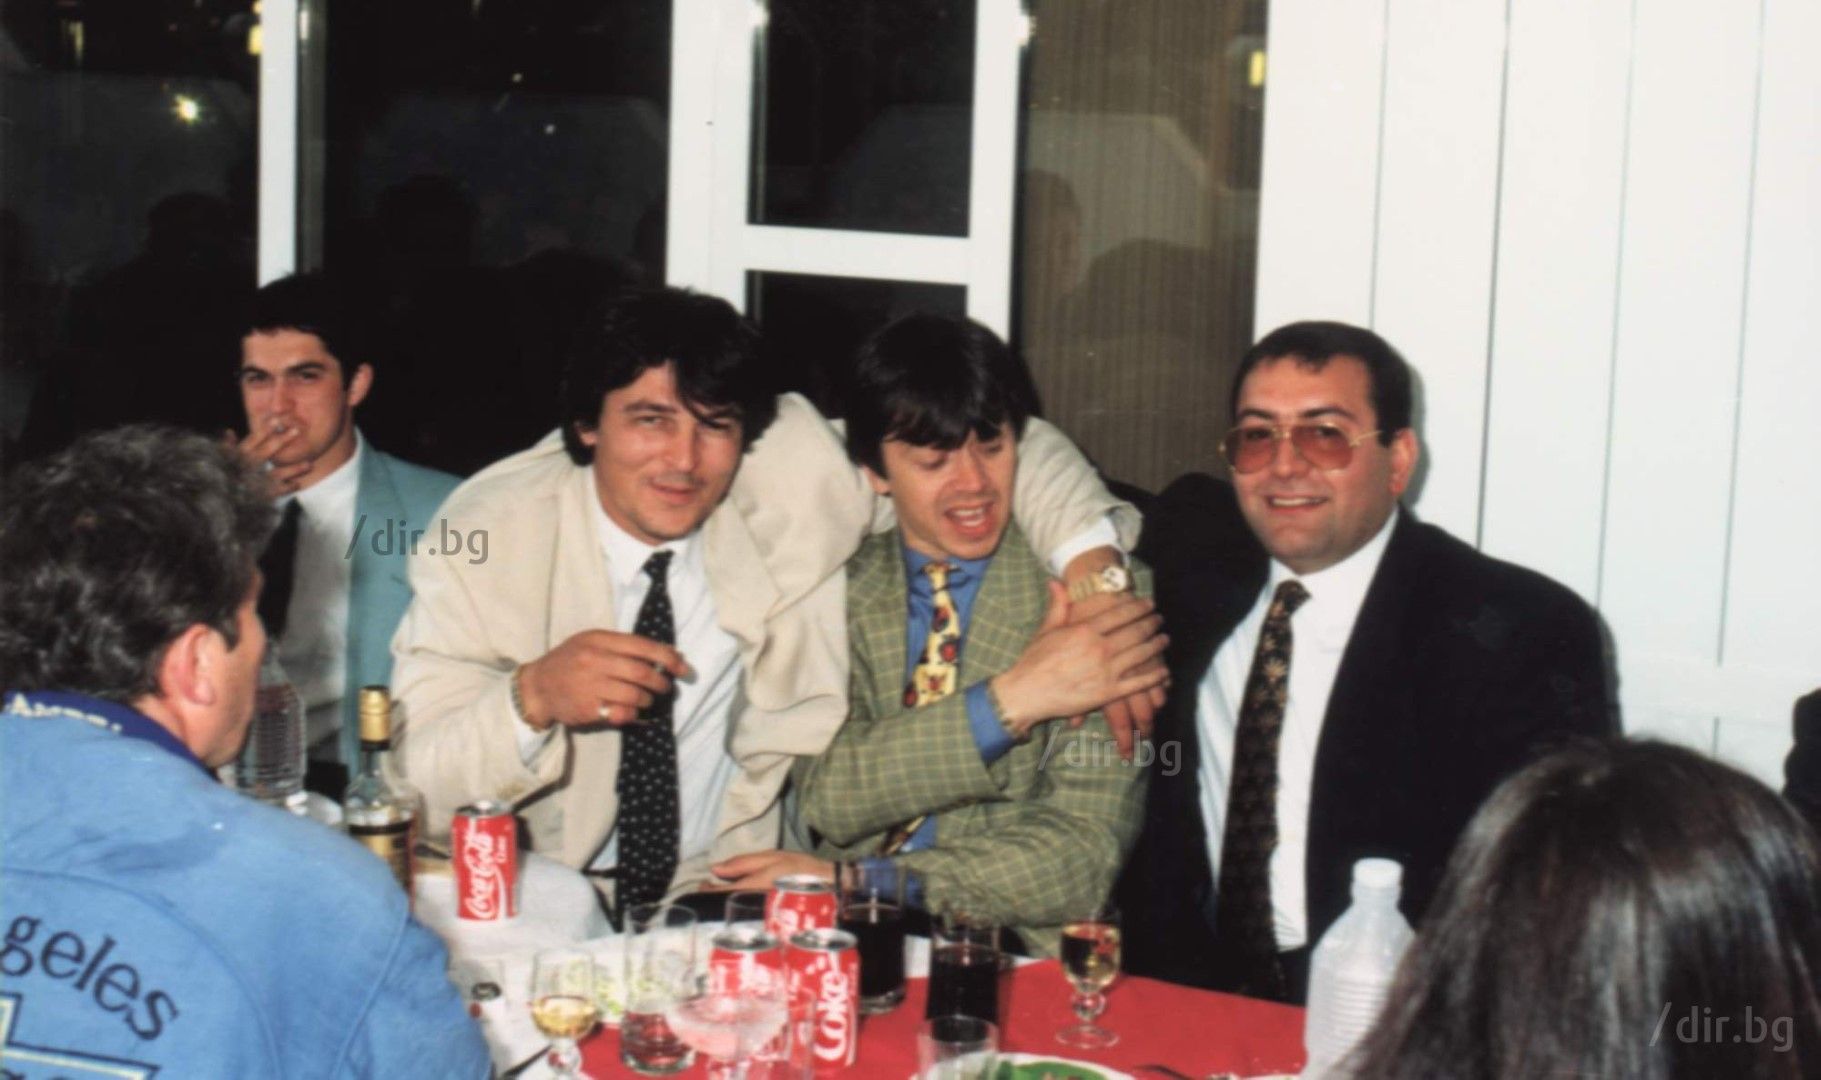  Боян Петракиев-Барона, Румен Гайтански-Вълка и Филип Найденов-Фатик (от ляво на дясно) на сватбата на Георги и Мая. Един от най-запомнящите се моменти от тържеството е, когато Фатик вади револвер и стреля в ръката си. 